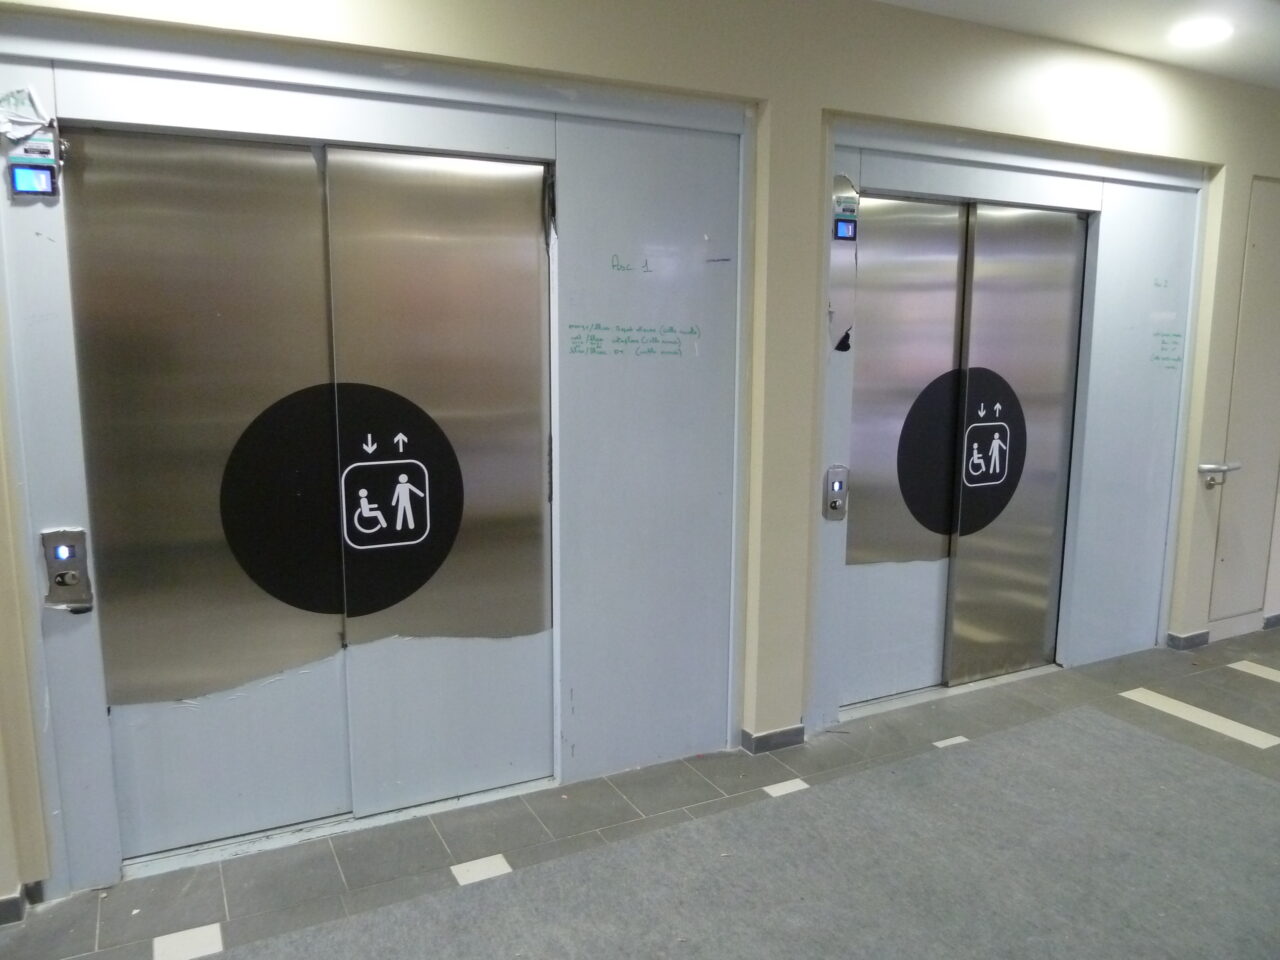 Signalétique (sticker identification ascenseur)